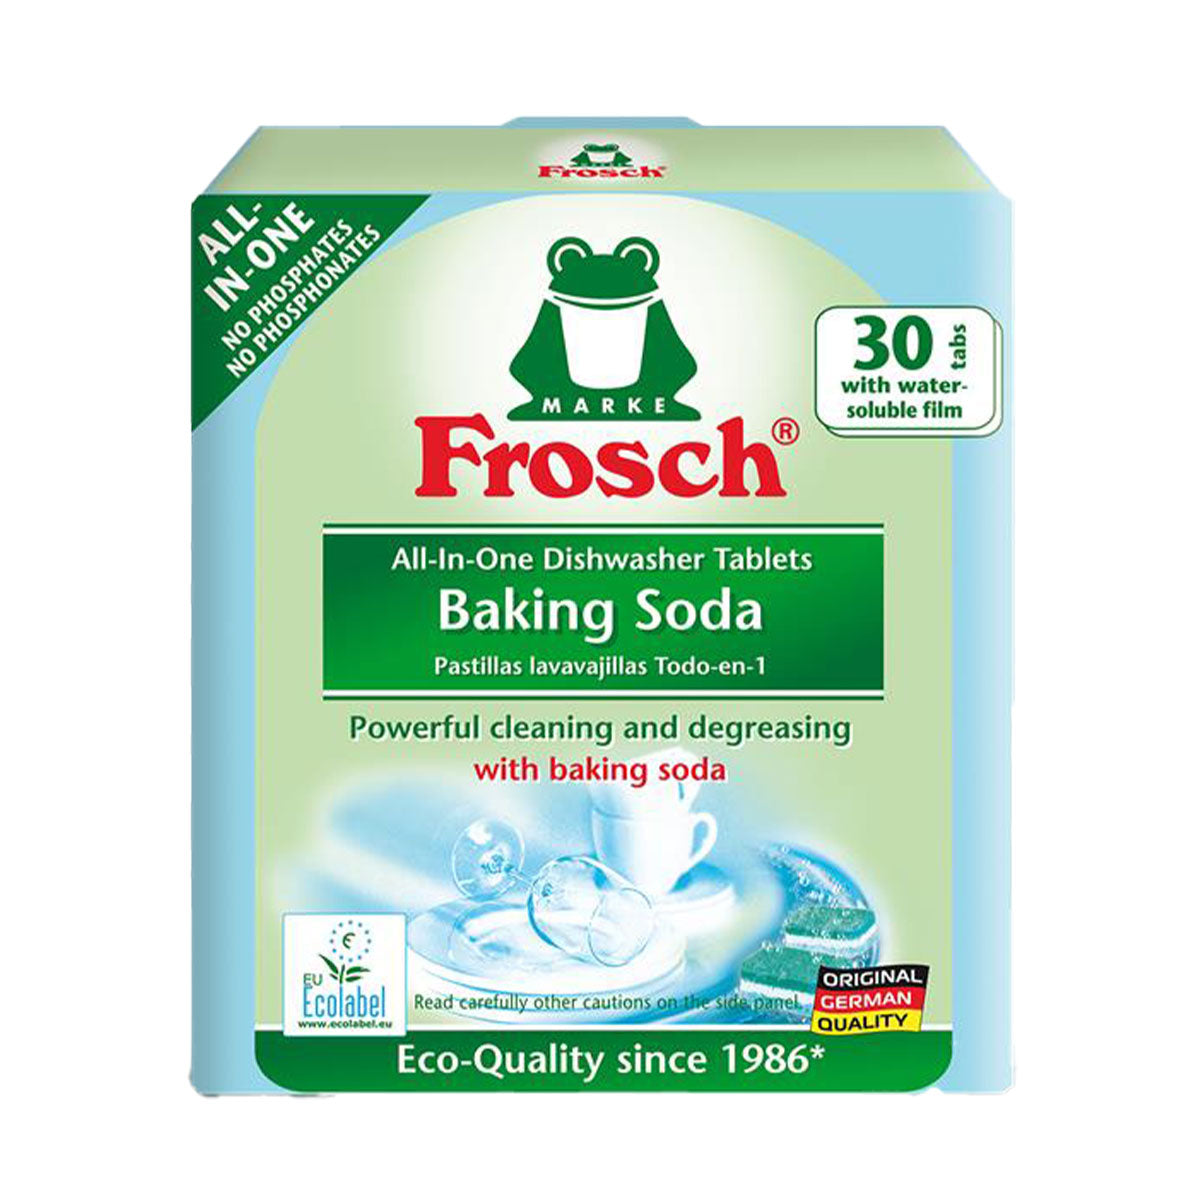 Tabletas lavavajillas con Bicarbonato de Sodio todo en uno Frosch (30 unidades) - Producto Ecológico